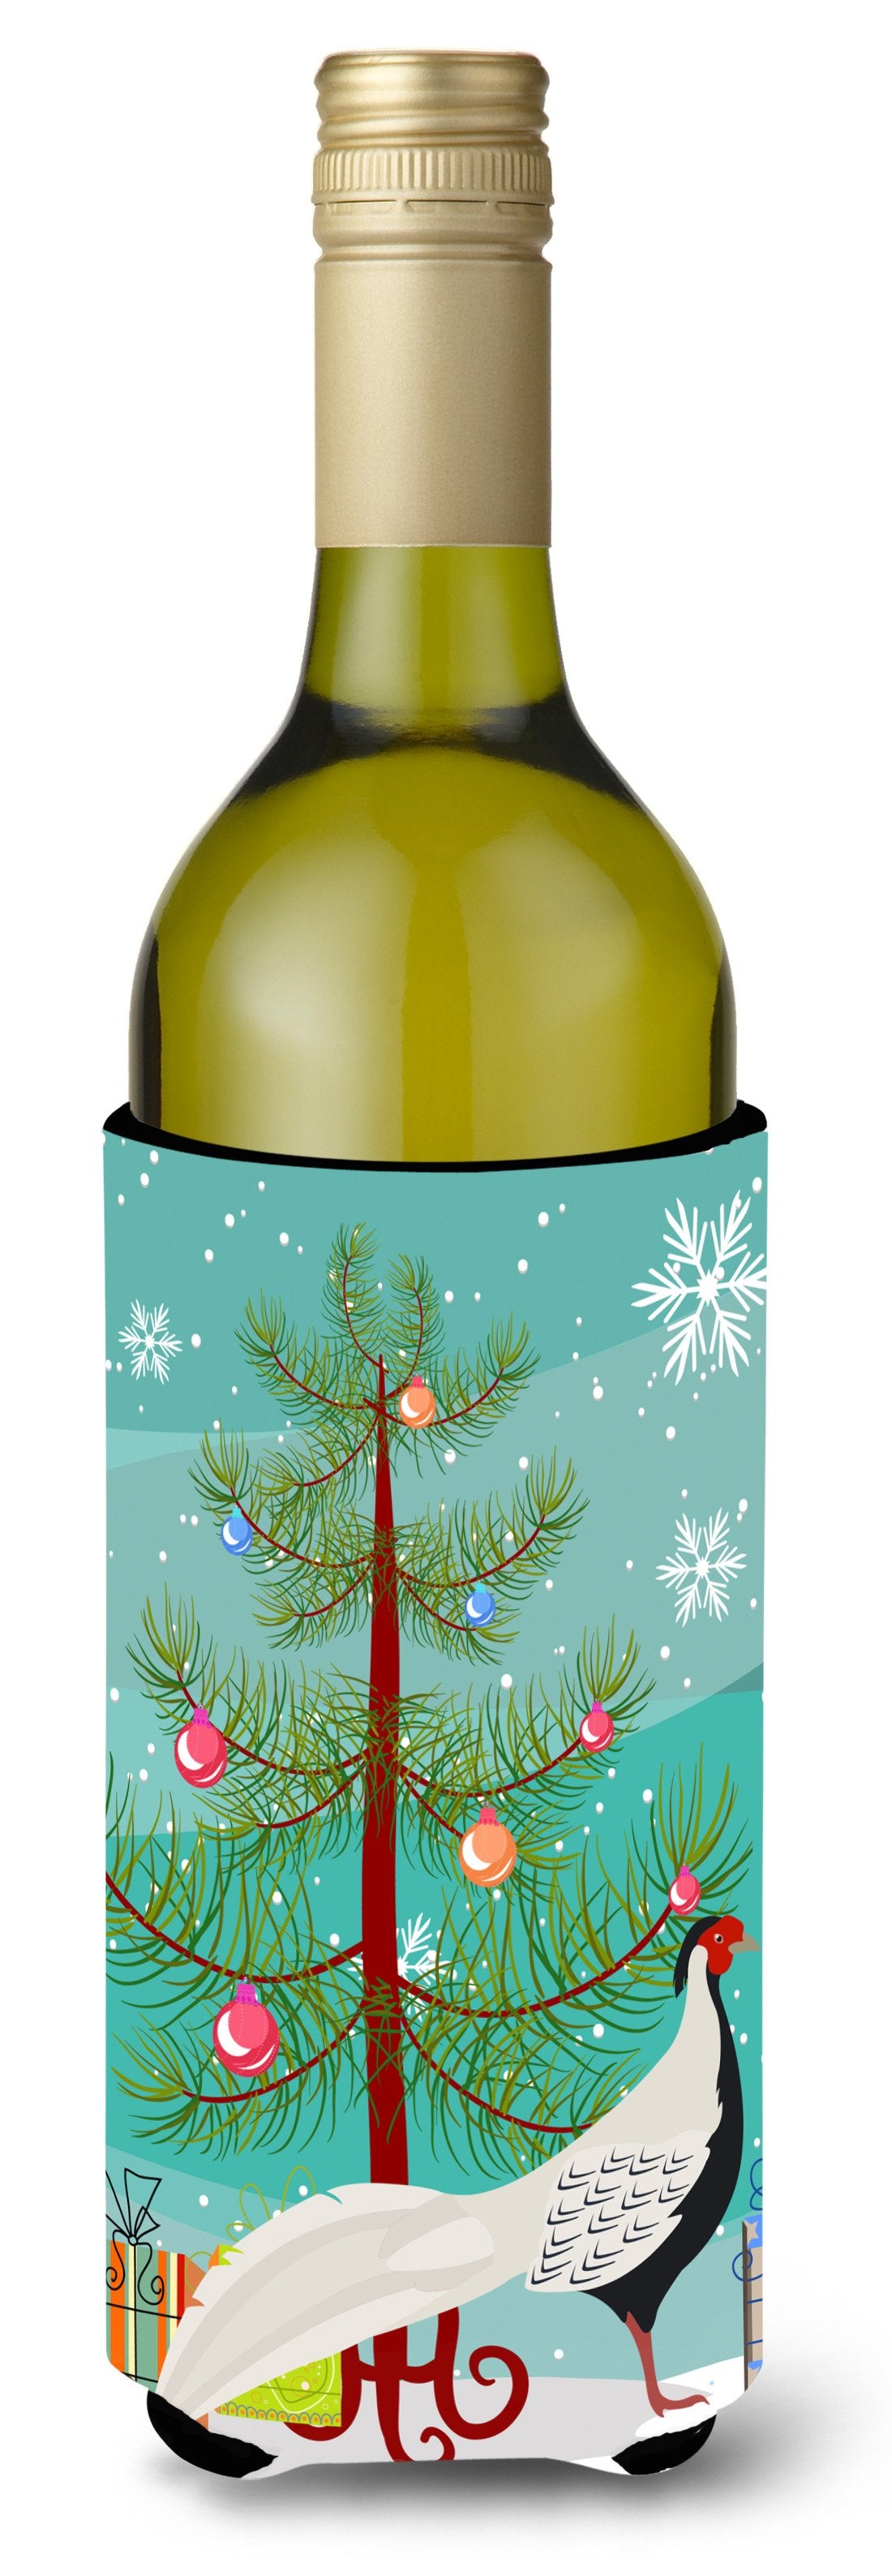 Silver Pheasant Christmas Wine Bottle Beverge Insulator Hugger BB9296LITERK by Caroline's Treasures